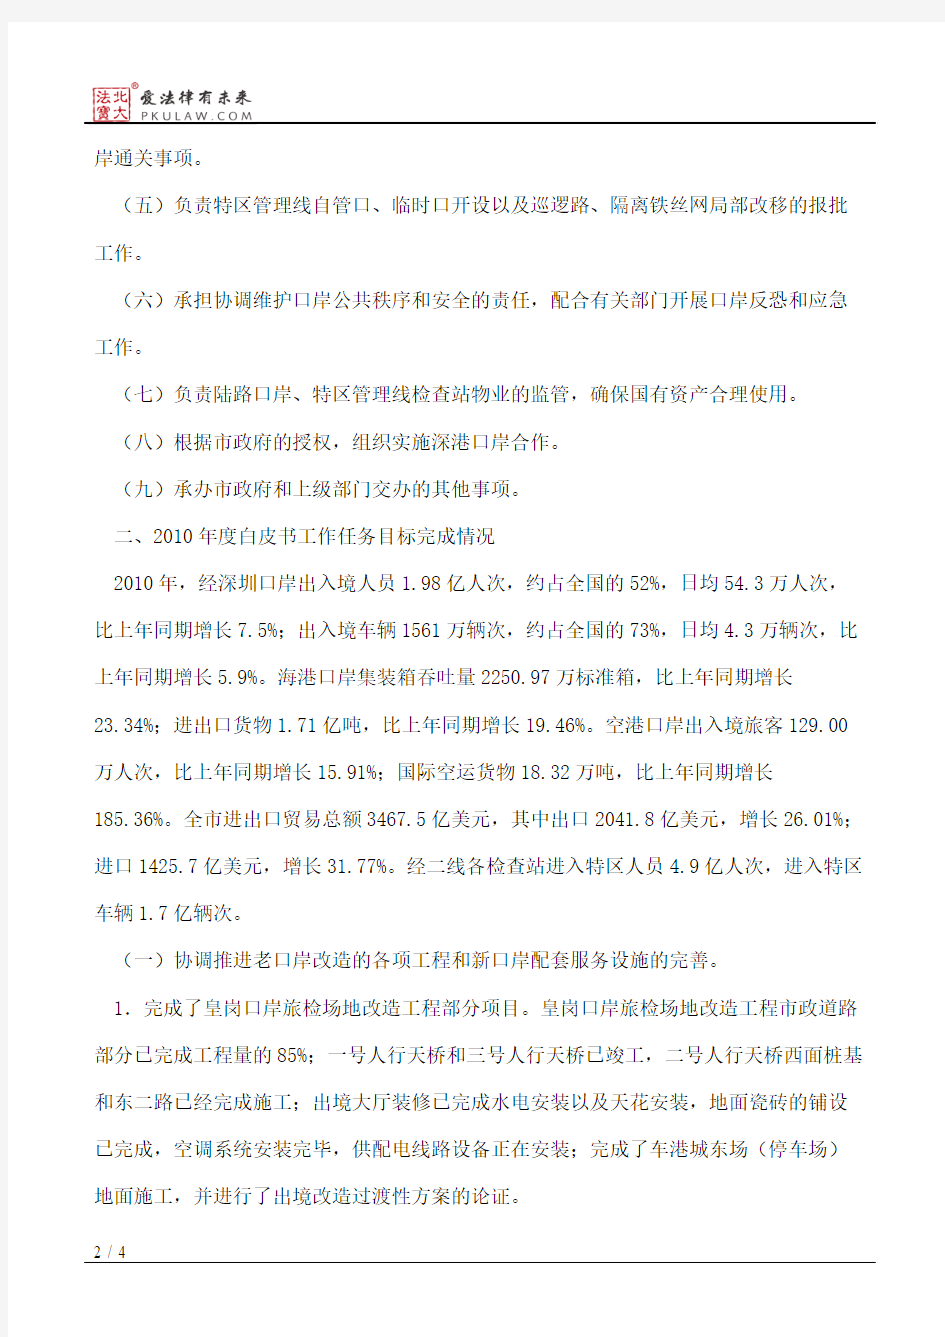 深圳市人民政府口岸办公室2011年度公共服务白皮书